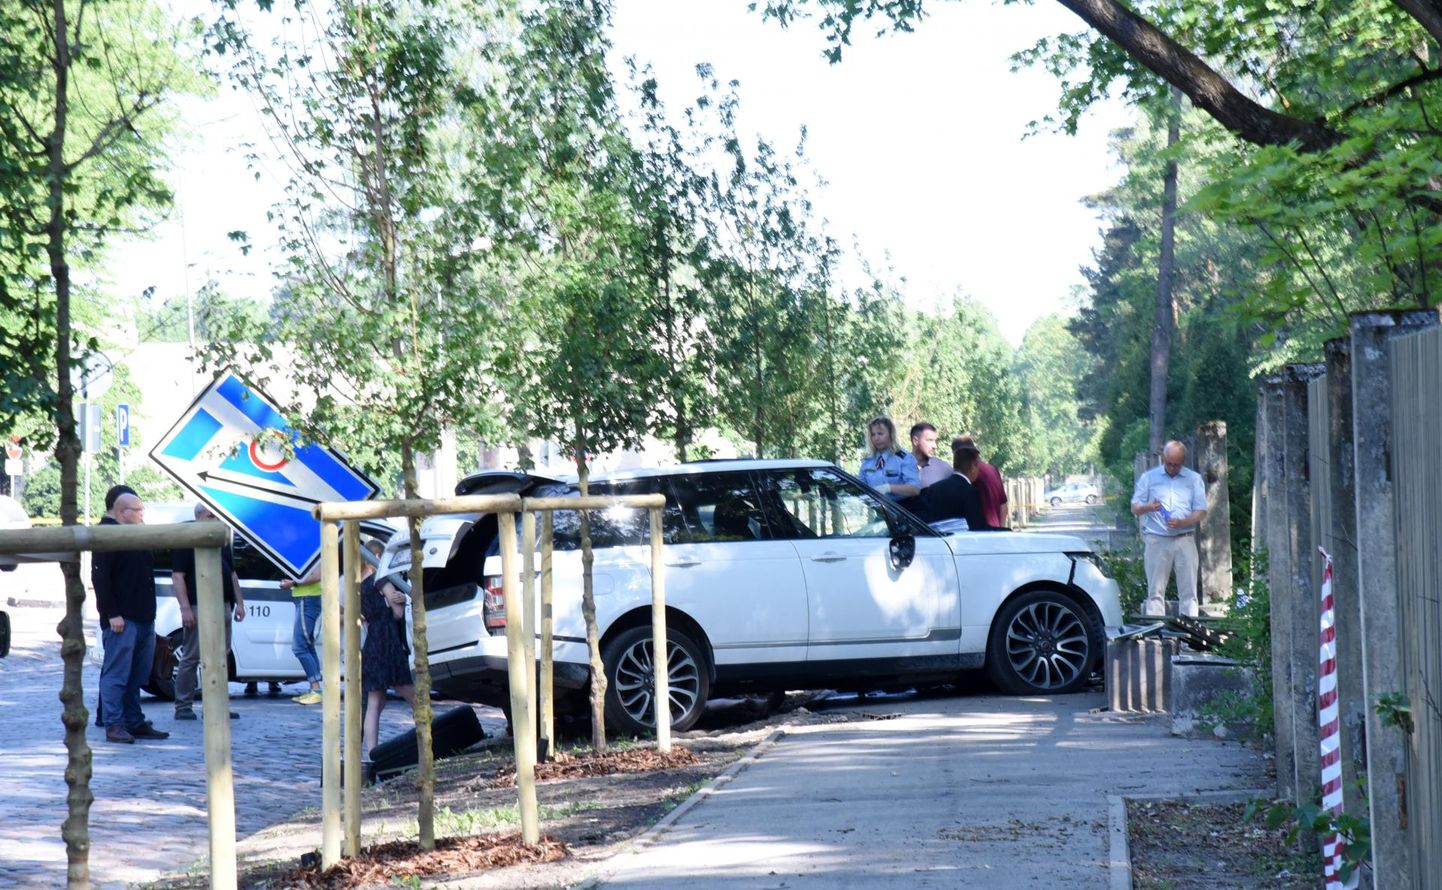 Jurist Mārtiņš Bunkuse auto mõrvapaigas Riias Aizsaule tänaval. Kurjategijad tulistasid teda kolmapäeva hommikul kella 8.40 ajal.